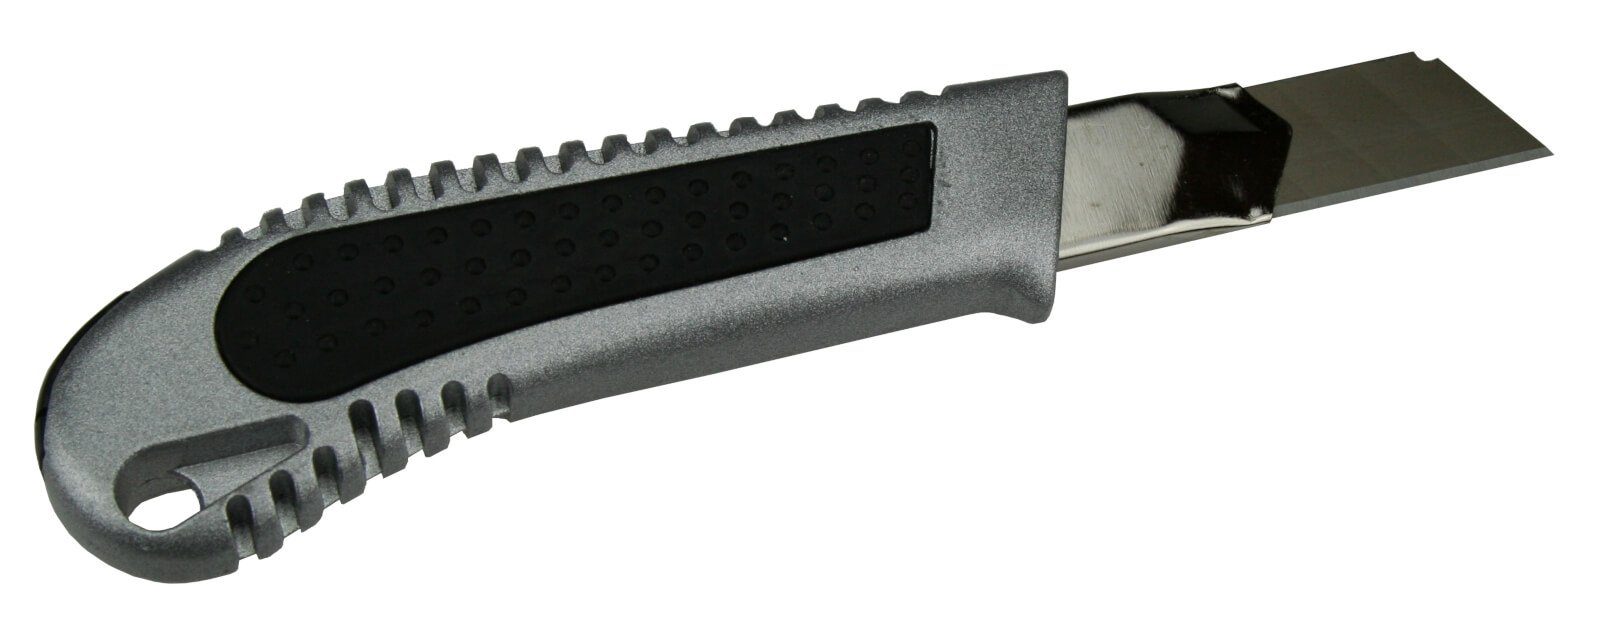 Köcher Cuttermesser 10 Cutter + 18mm Cuttermesser im 2 peveha24 Abbrechklingen